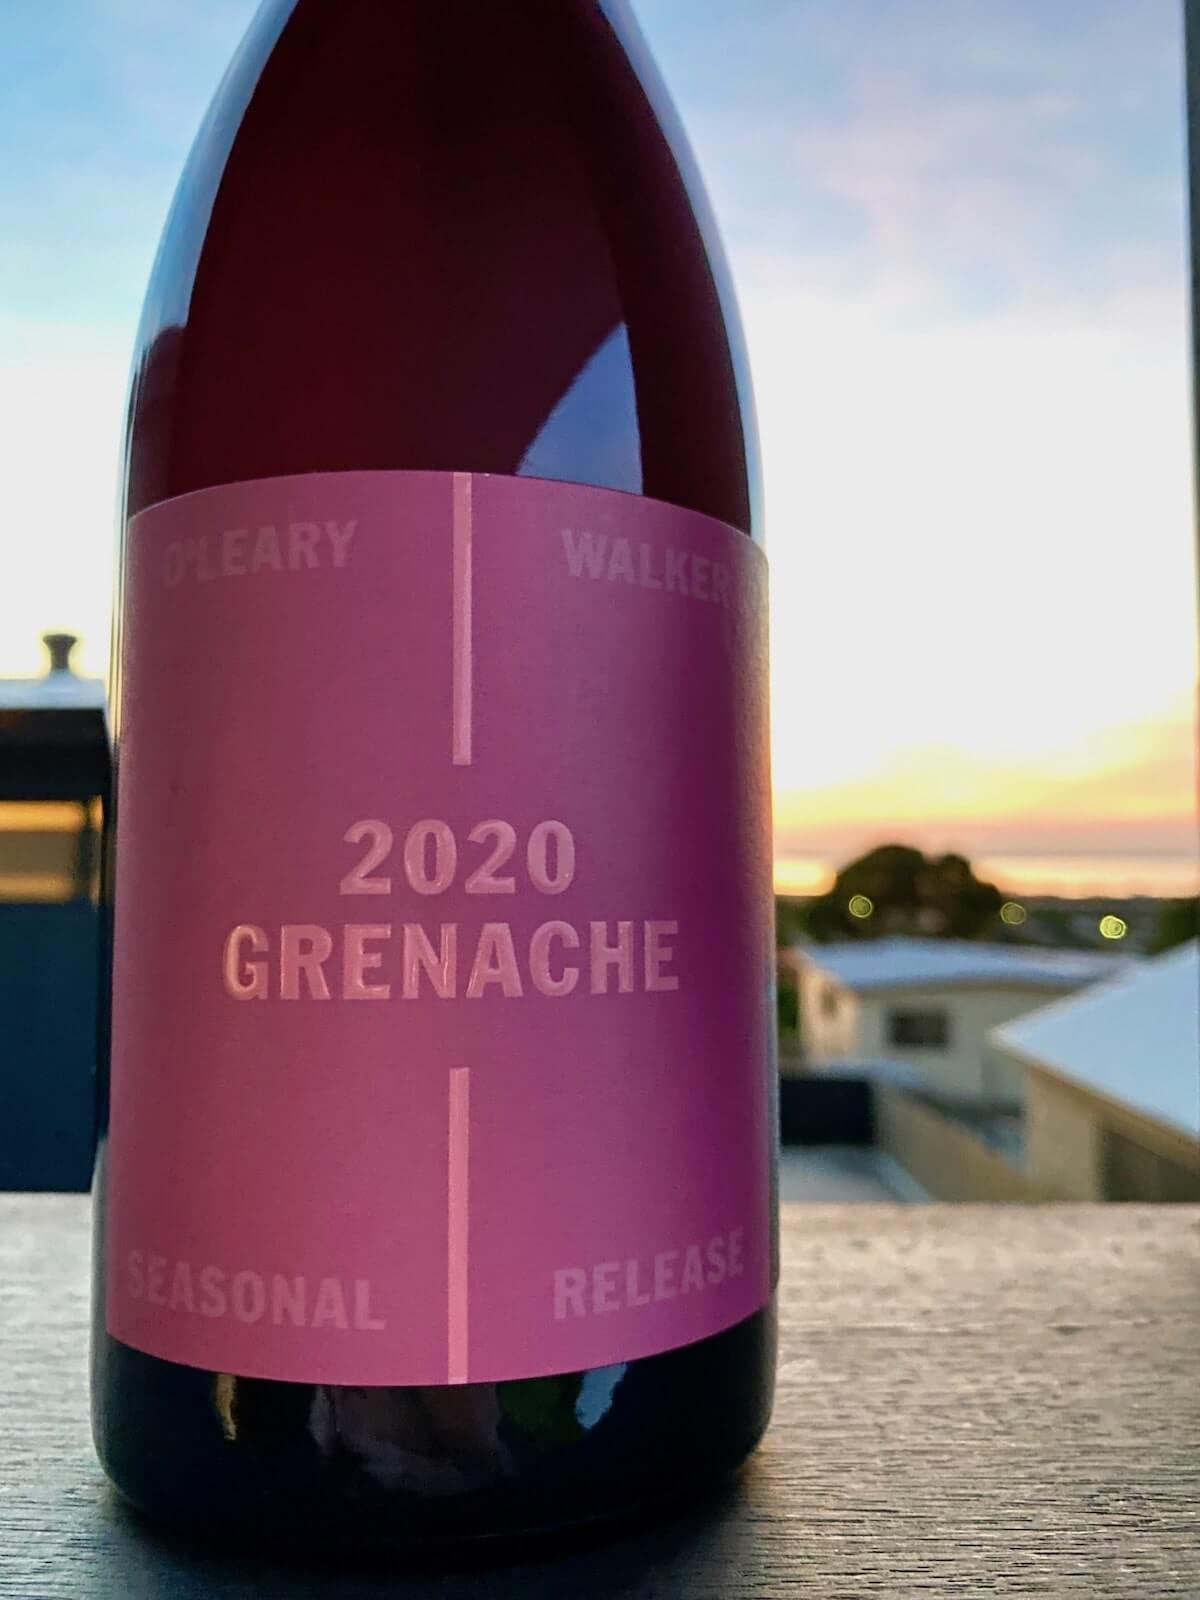 O'Leary Walker 2020 Grenache - Seasonal Release